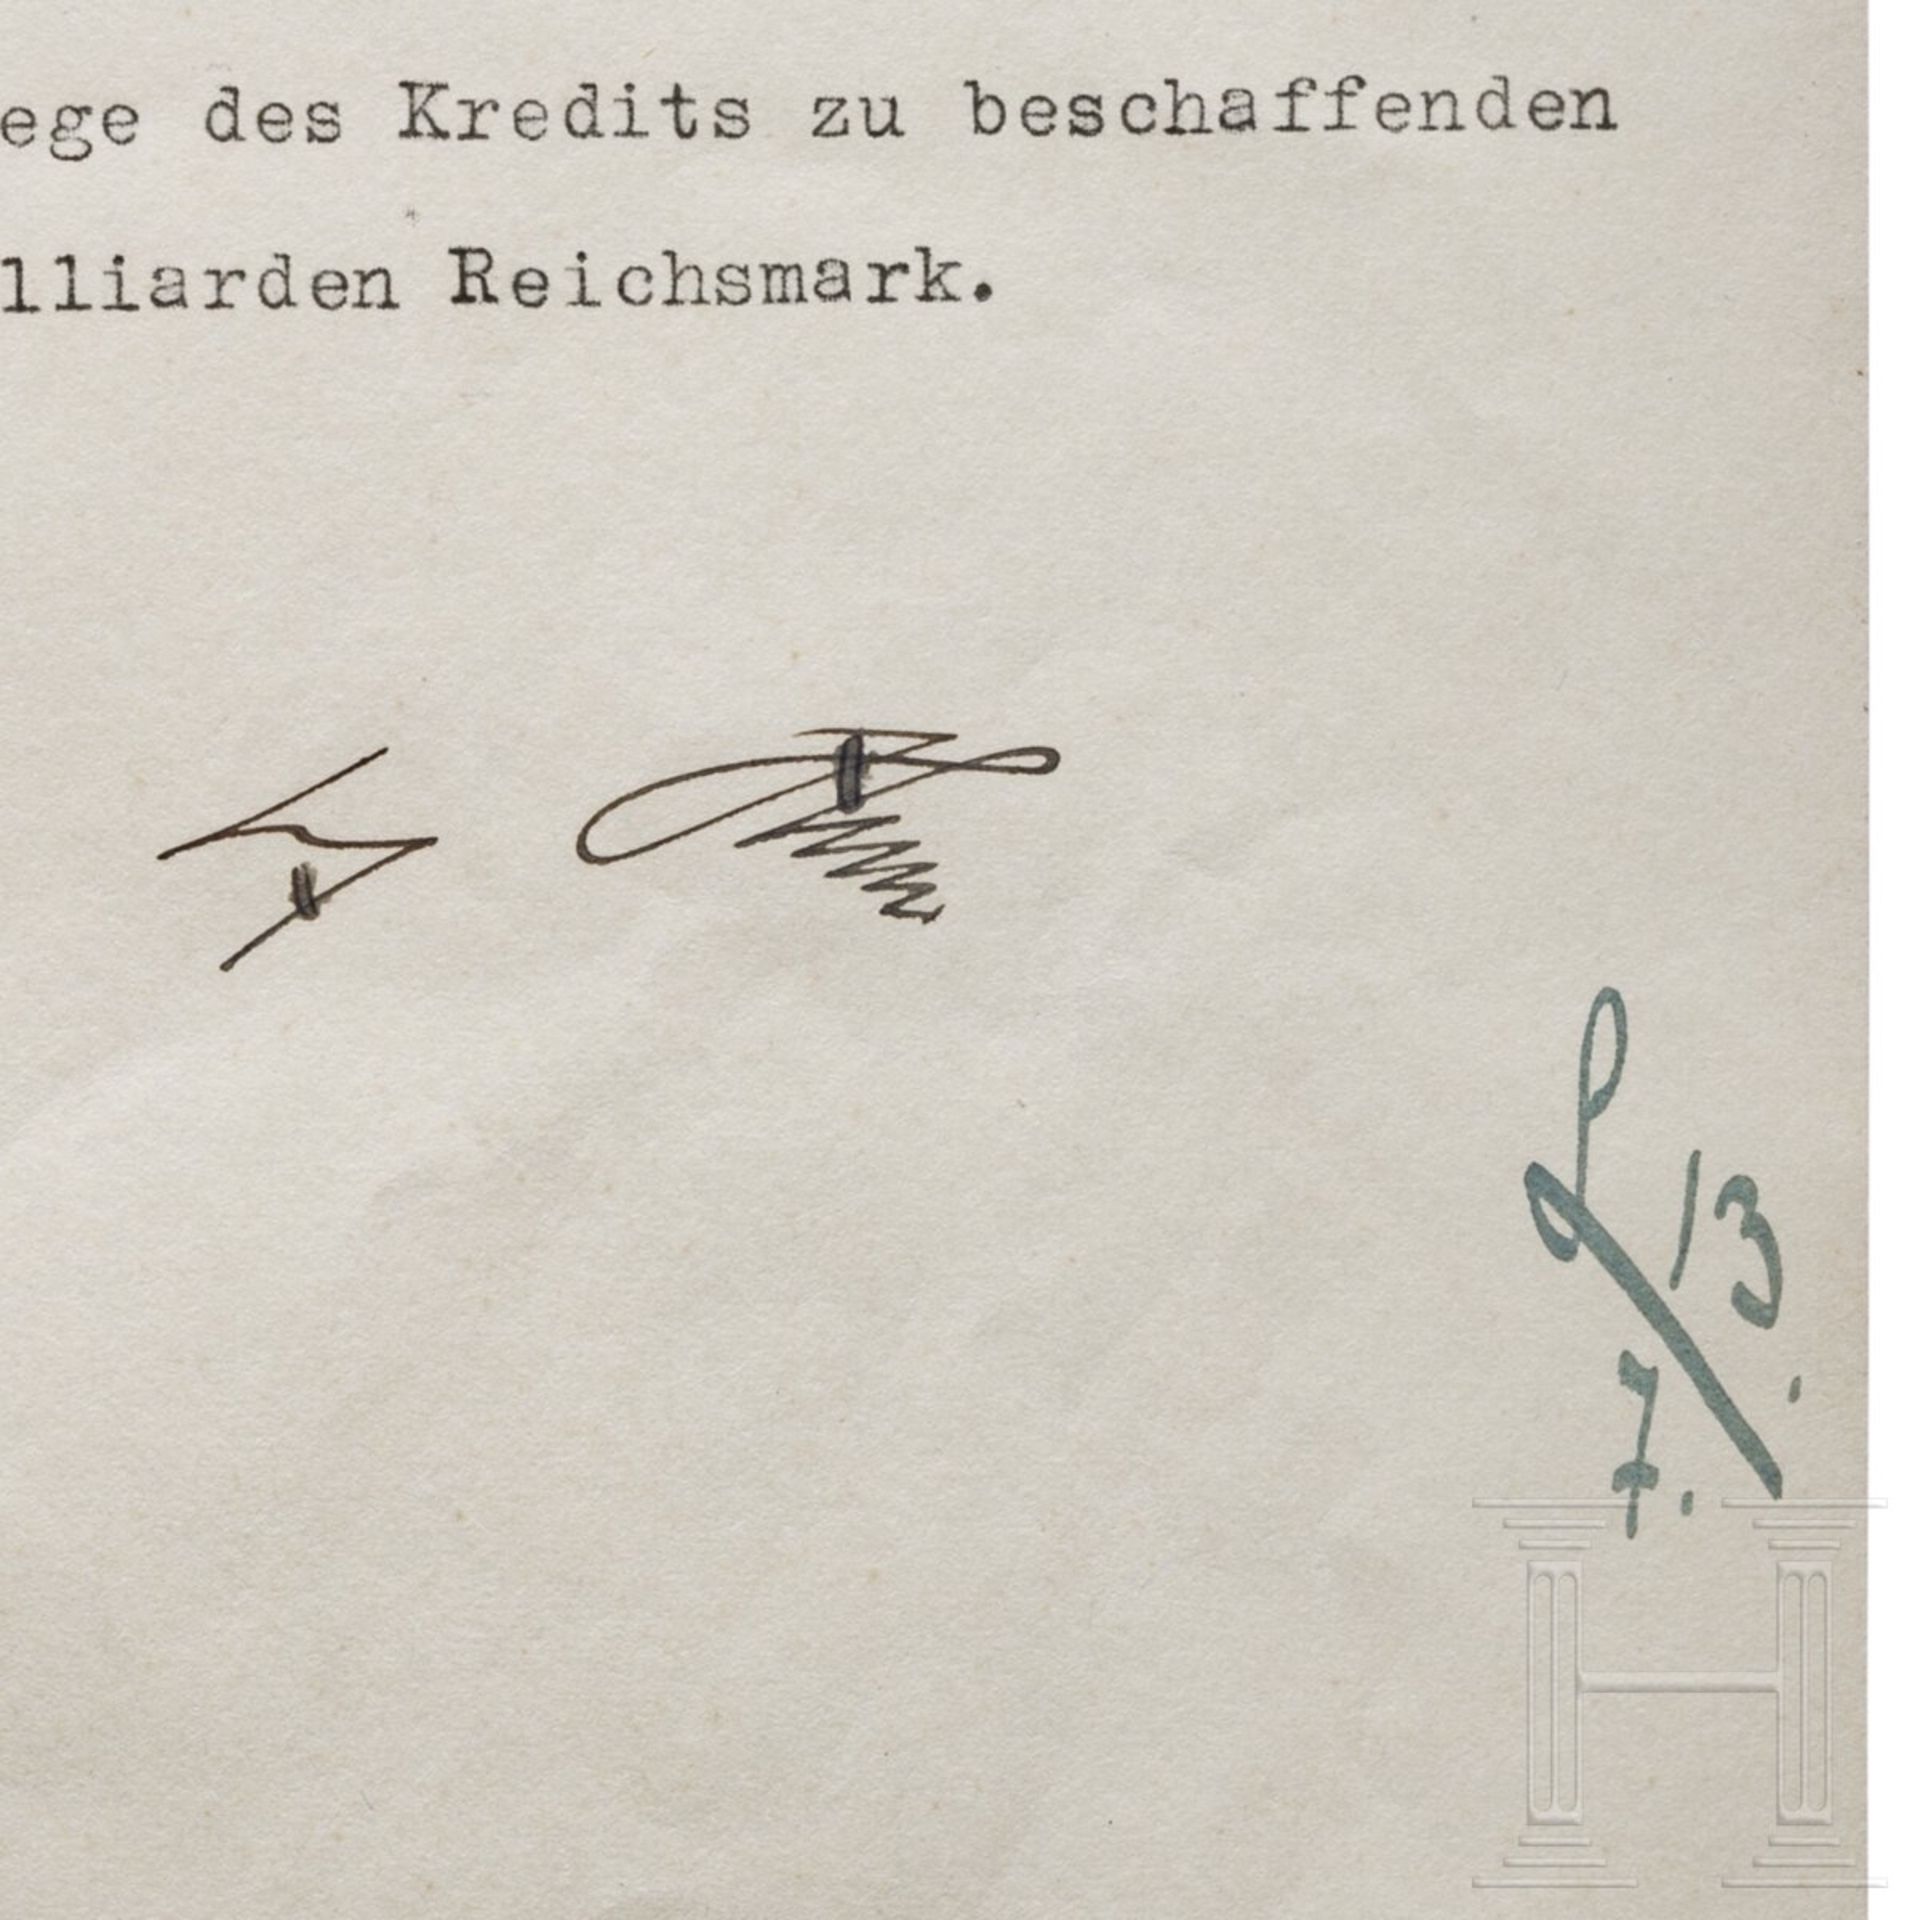 Adolf Hitler - Kreditermächtigung vom 13. Juli 1938 mit einer Erhöhung von 17 auf 21 Milliarden RM - Image 3 of 3